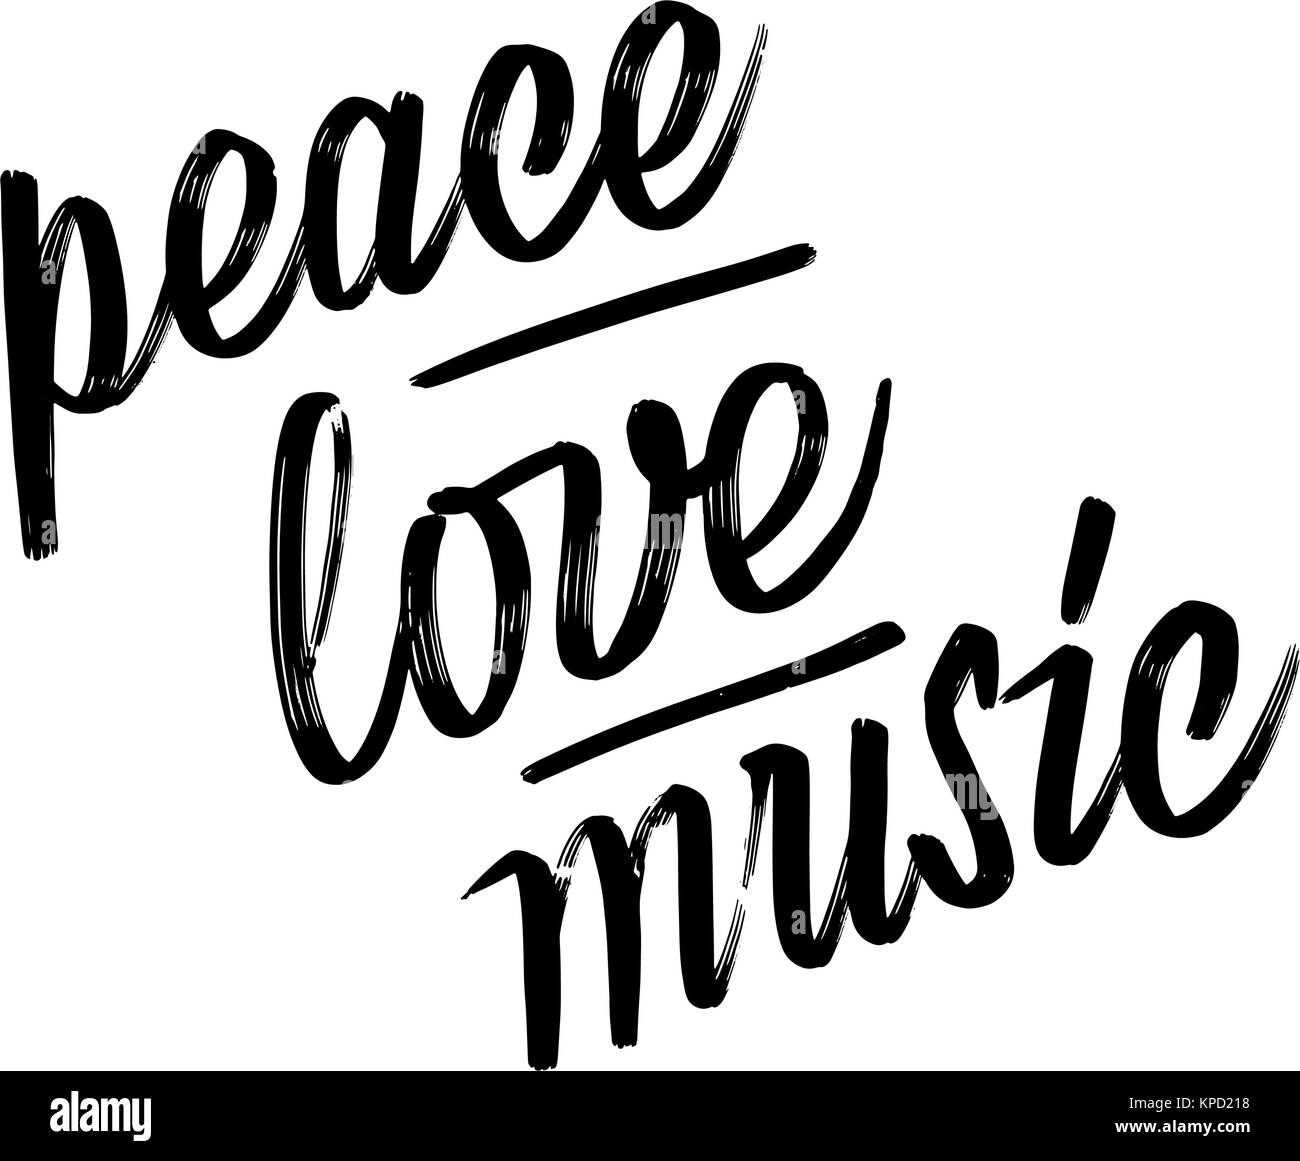 Frieden, Liebe, Musik. Beschriftung von Hand. Kalligraphie vektor Skizze mit dicken Pinsel, Stift. Stock Vektor